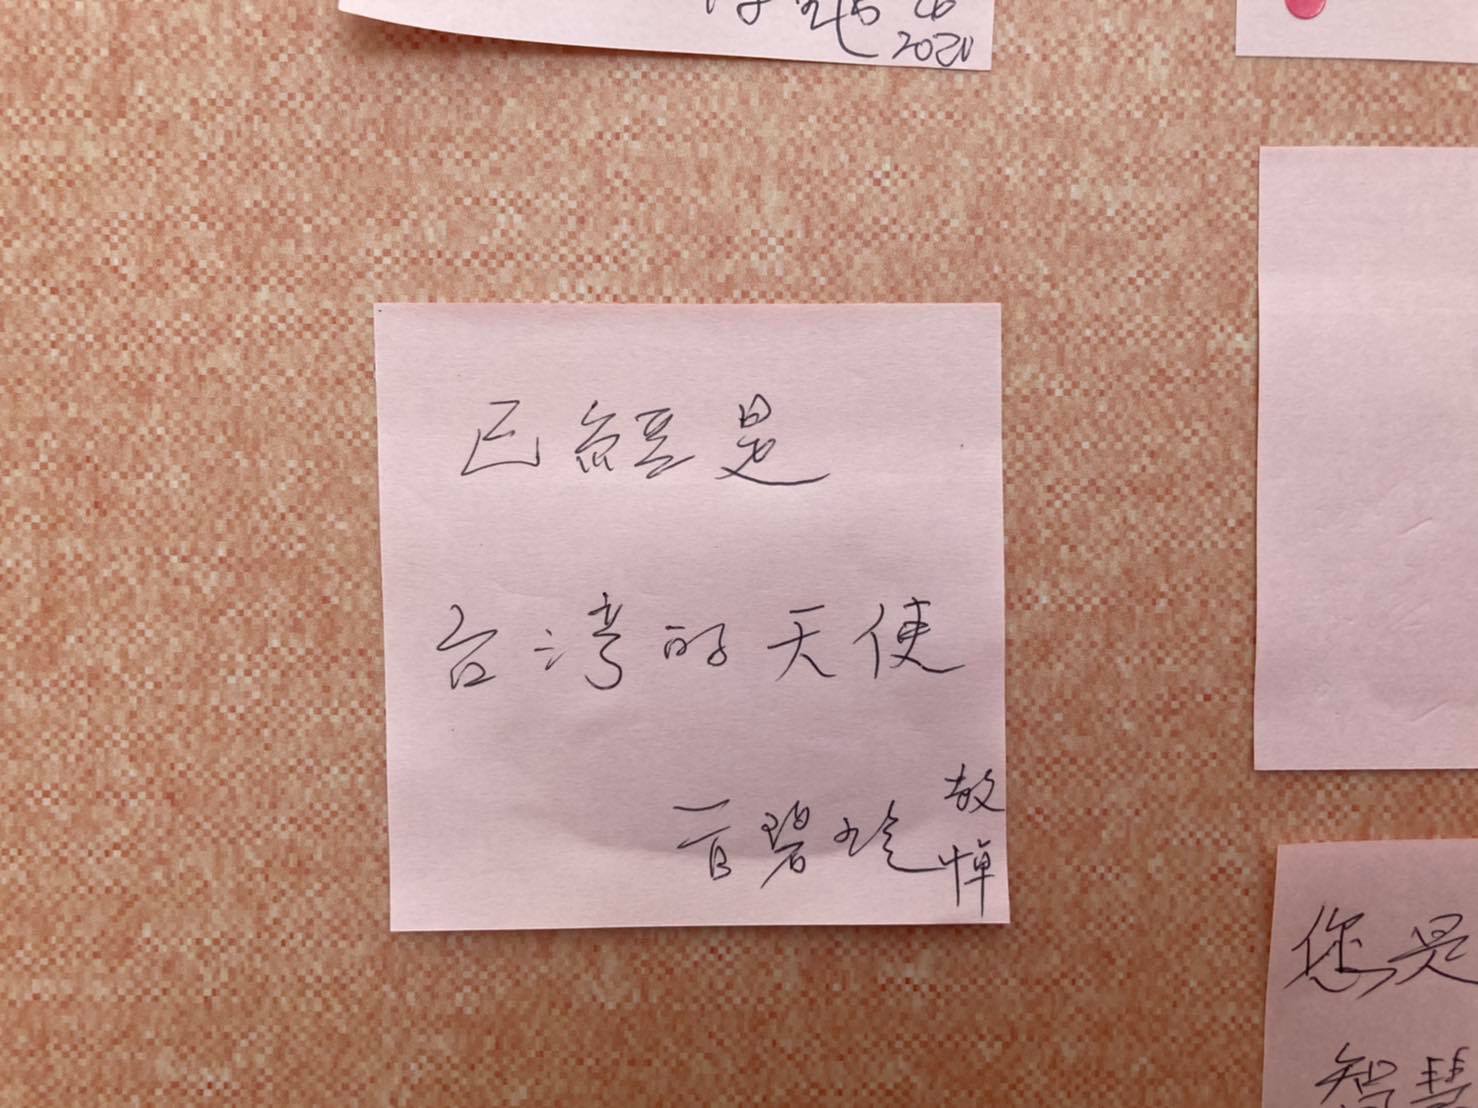 陳其邁赴台北賓館悼念李登輝 「我們用生命守護民主」